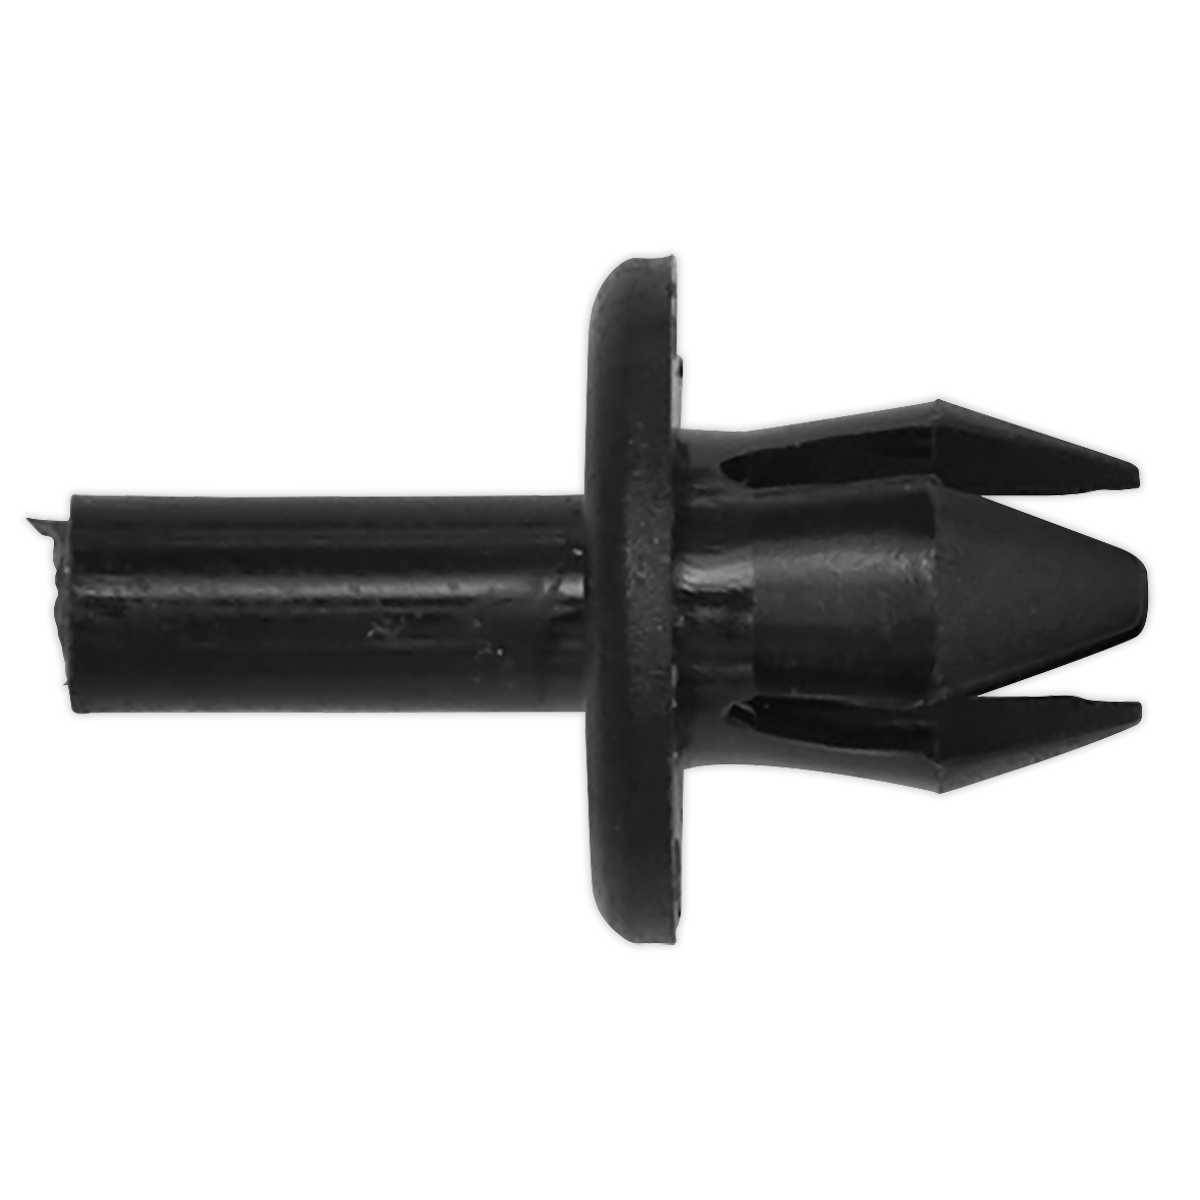 Sealey Push Rivet, Ø14mm x 24mm, GM - Pack of 20